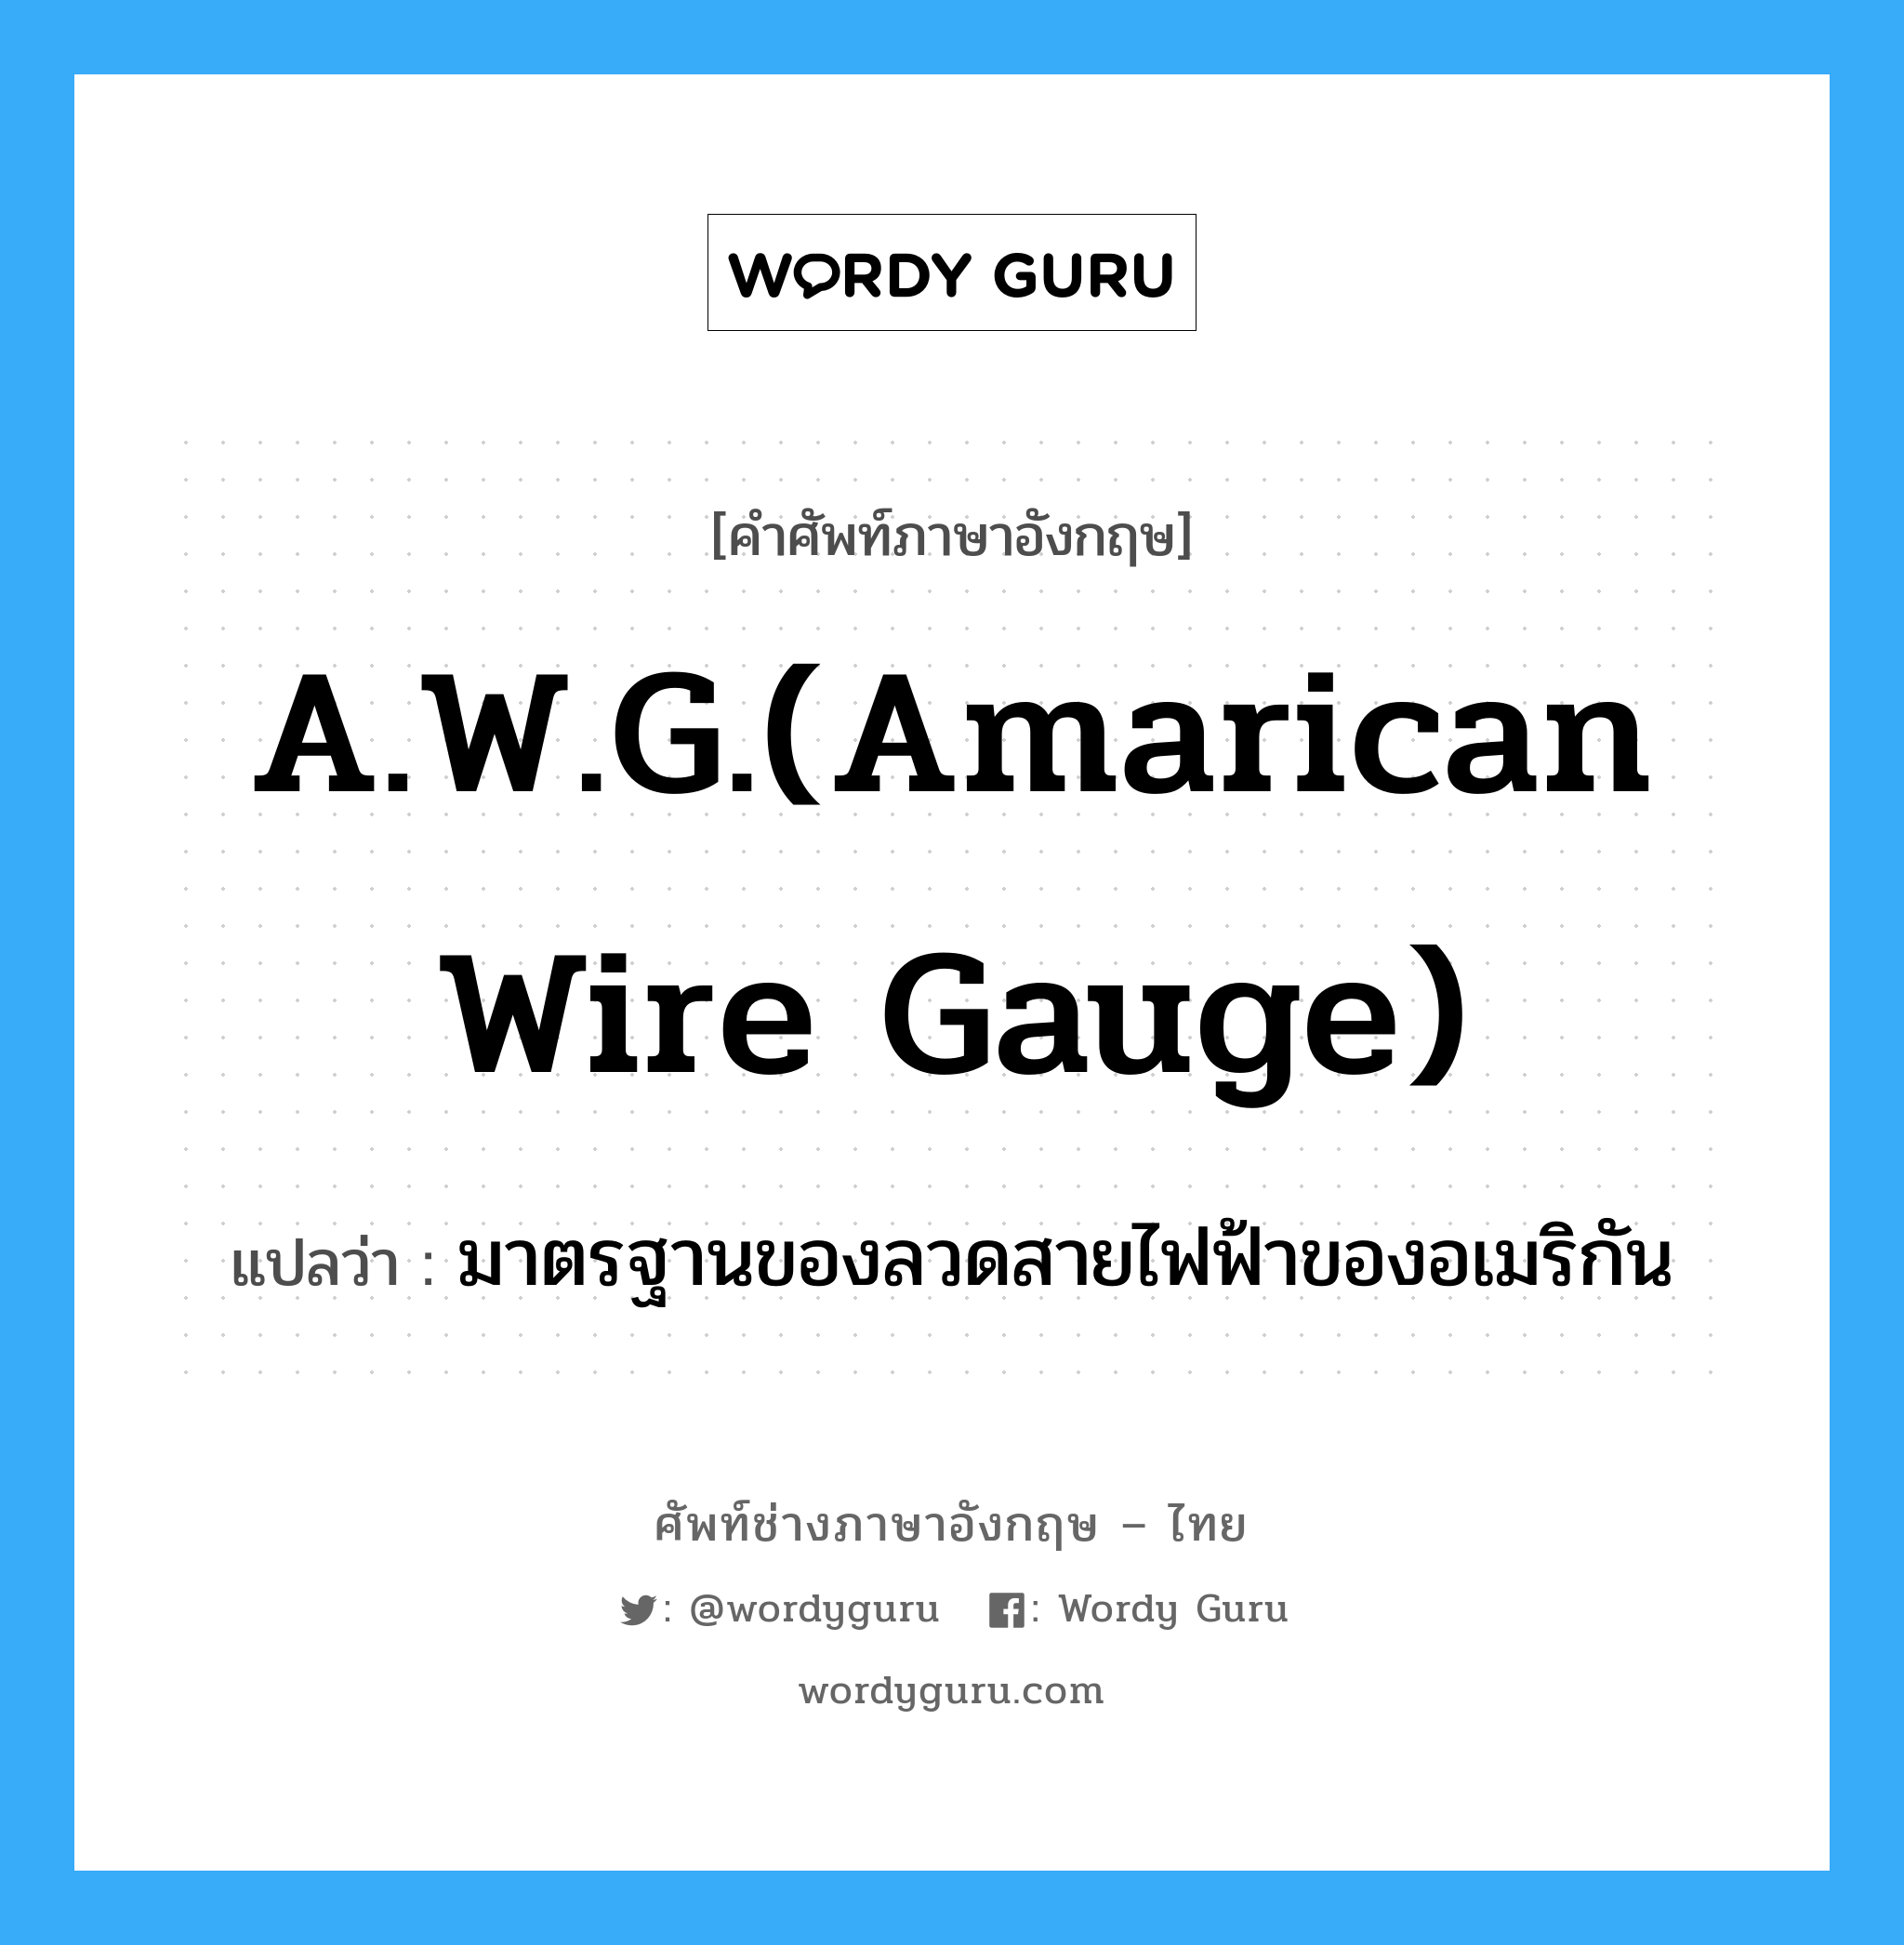 มาตรฐานของลวดสายไฟฟ้าของอเมริกัน ภาษาอังกฤษ?, คำศัพท์ช่างภาษาอังกฤษ - ไทย มาตรฐานของลวดสายไฟฟ้าของอเมริกัน คำศัพท์ภาษาอังกฤษ มาตรฐานของลวดสายไฟฟ้าของอเมริกัน แปลว่า A.W.G.(Amarican wire gauge)